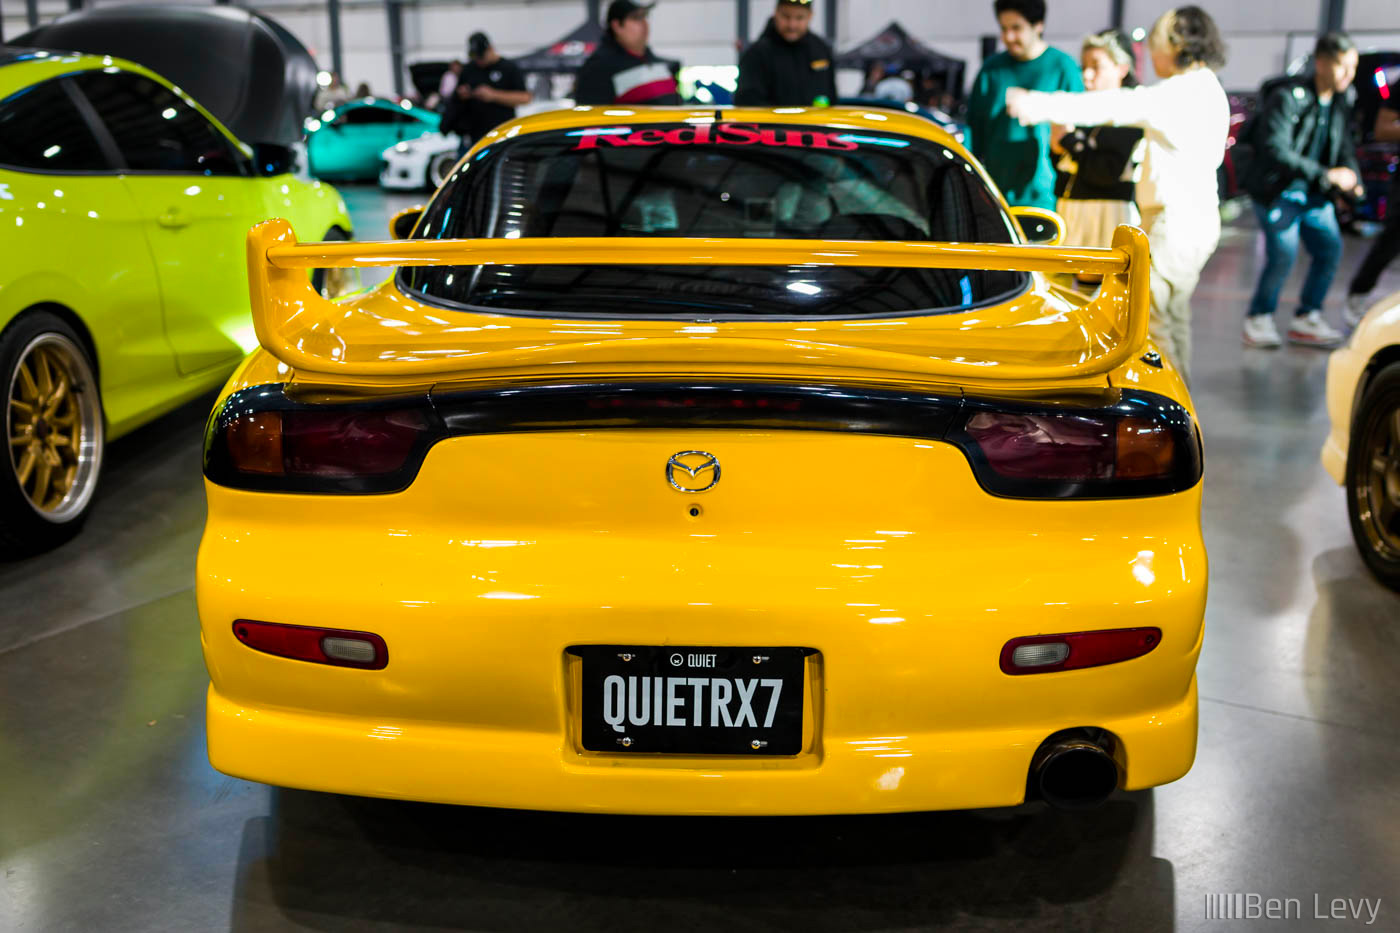 QUIETRX7, Rear of Yellow Mazda RX-7